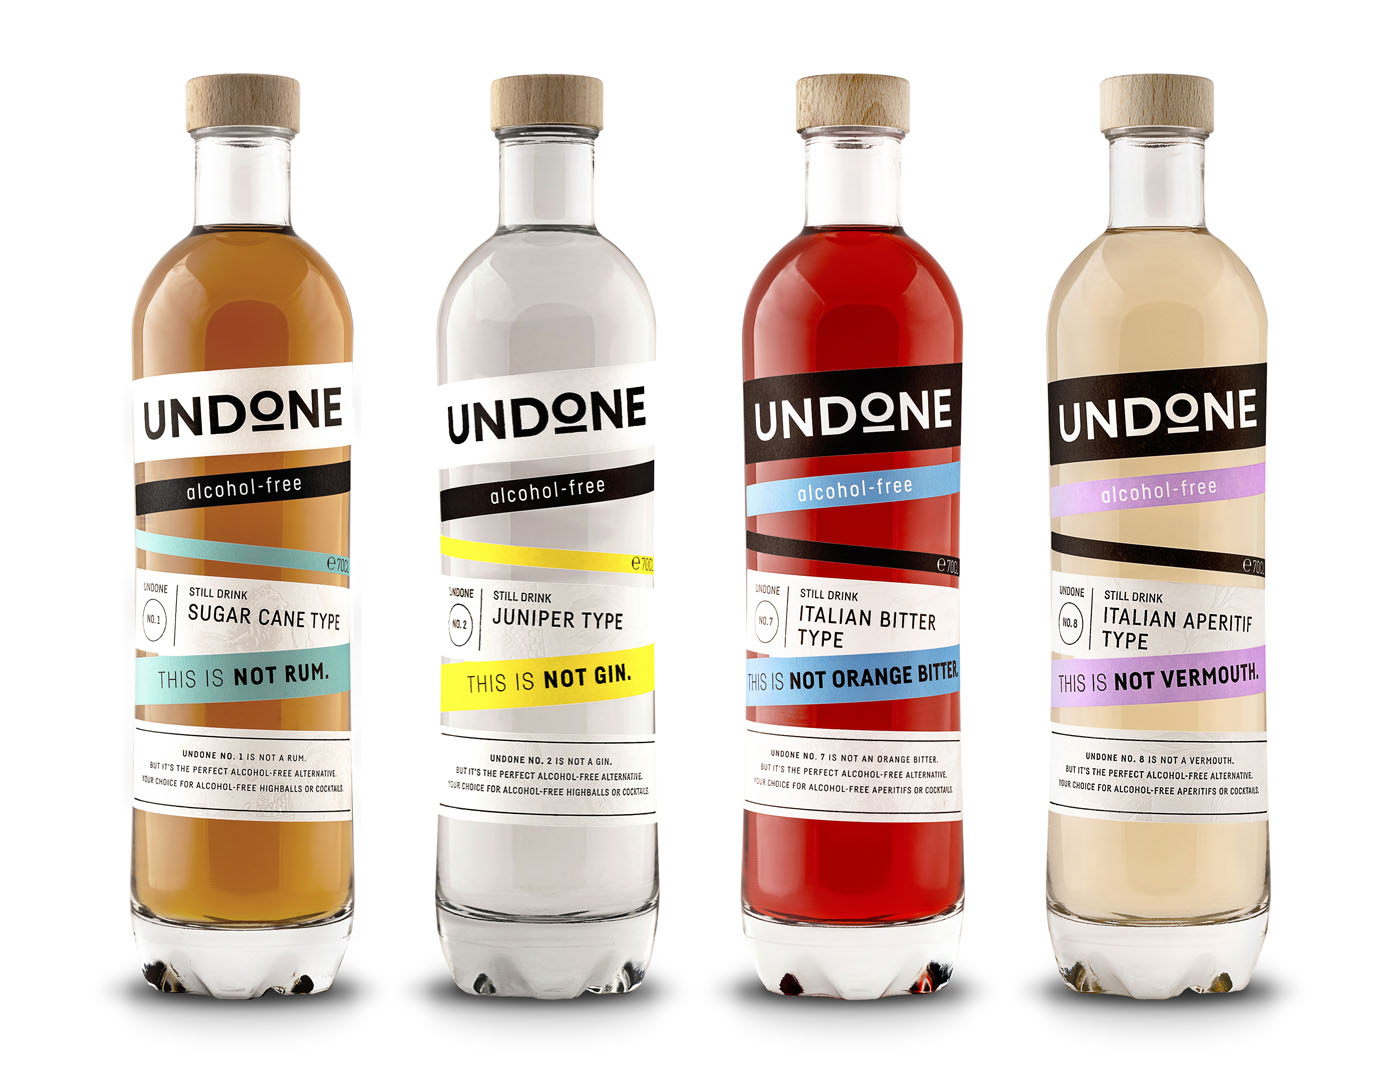 Erste Produktlinie: Undone startet mit alkoholfreien  Spirituosen-Alternativen durch –